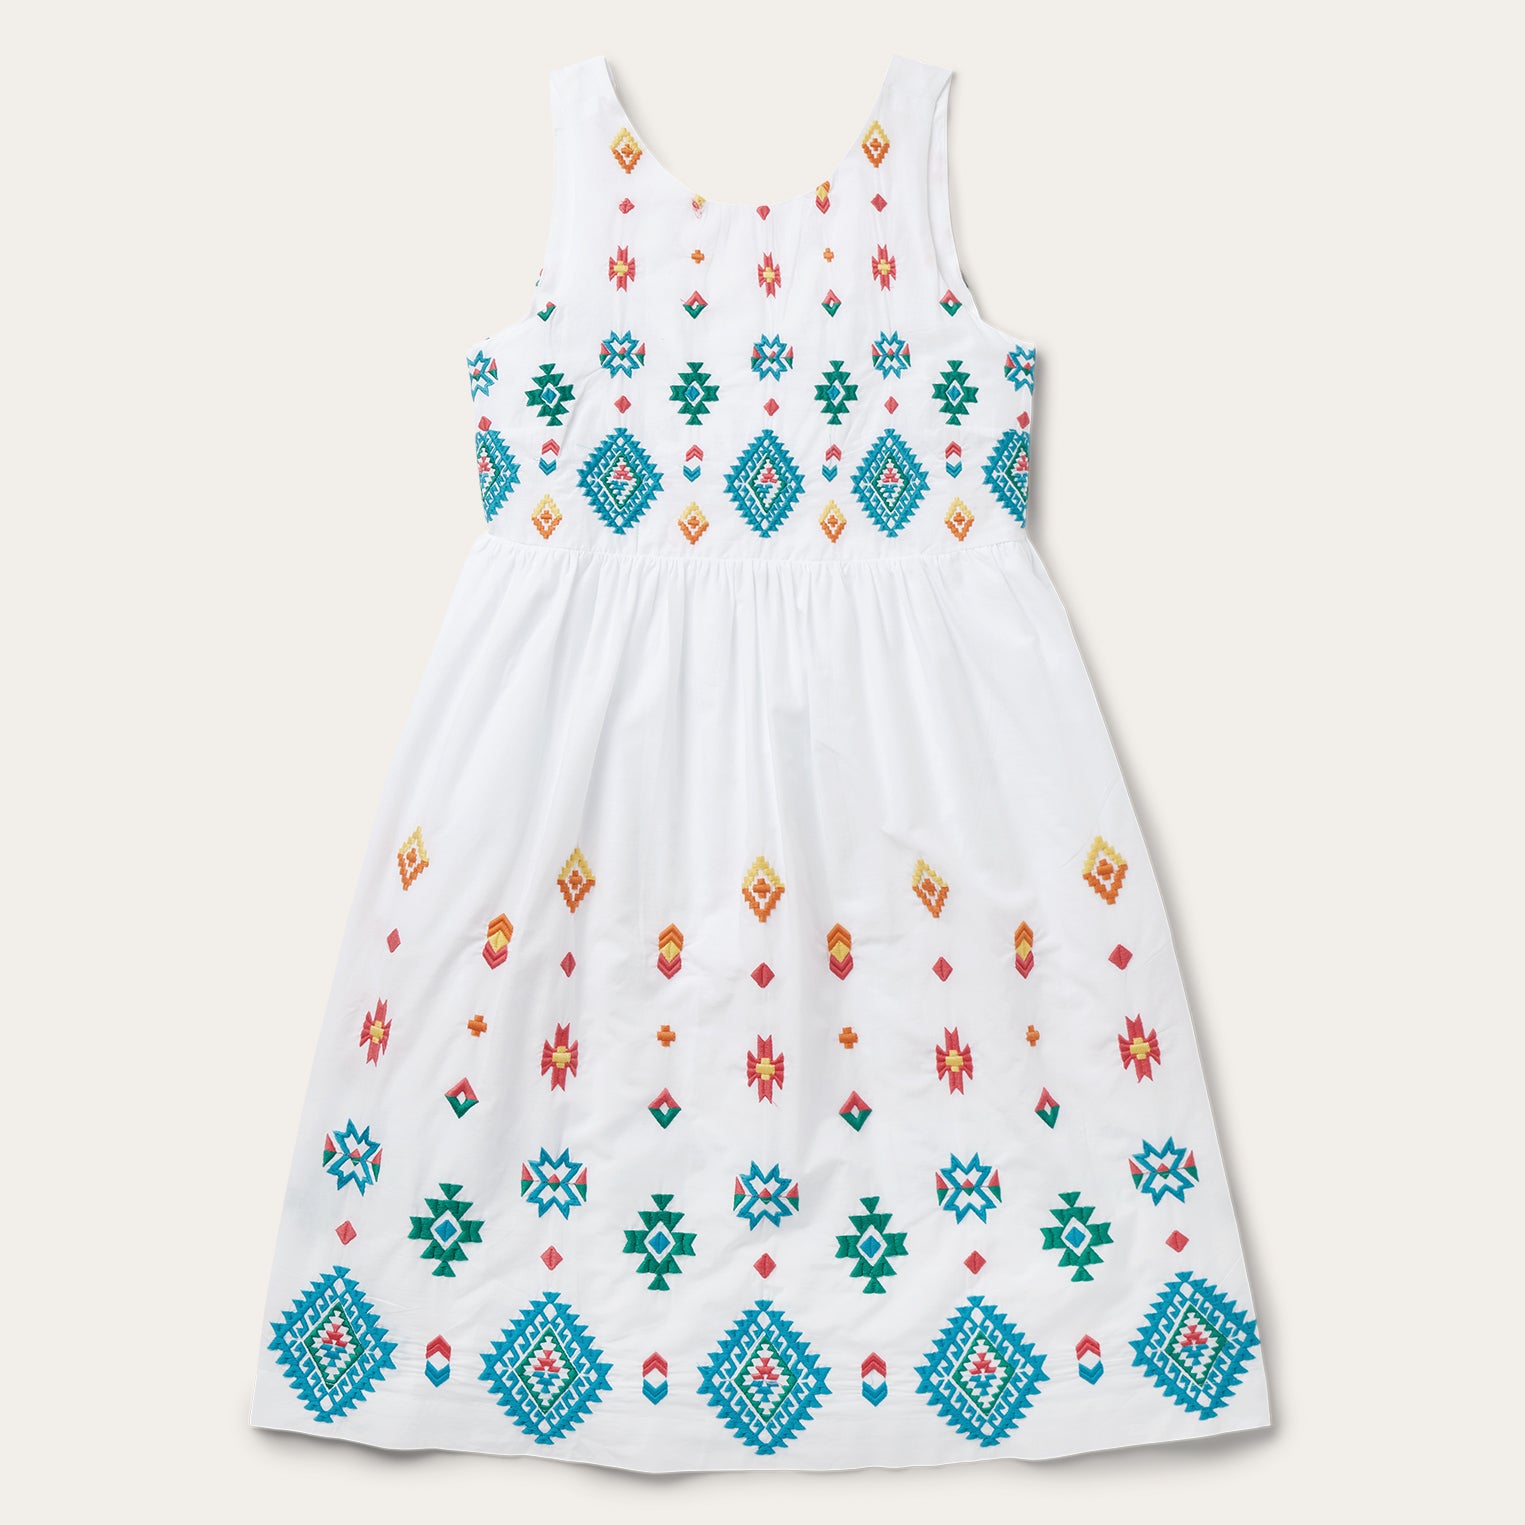 Bright Schiffli Embroidered White Cotton Lawn Dress | Stetson